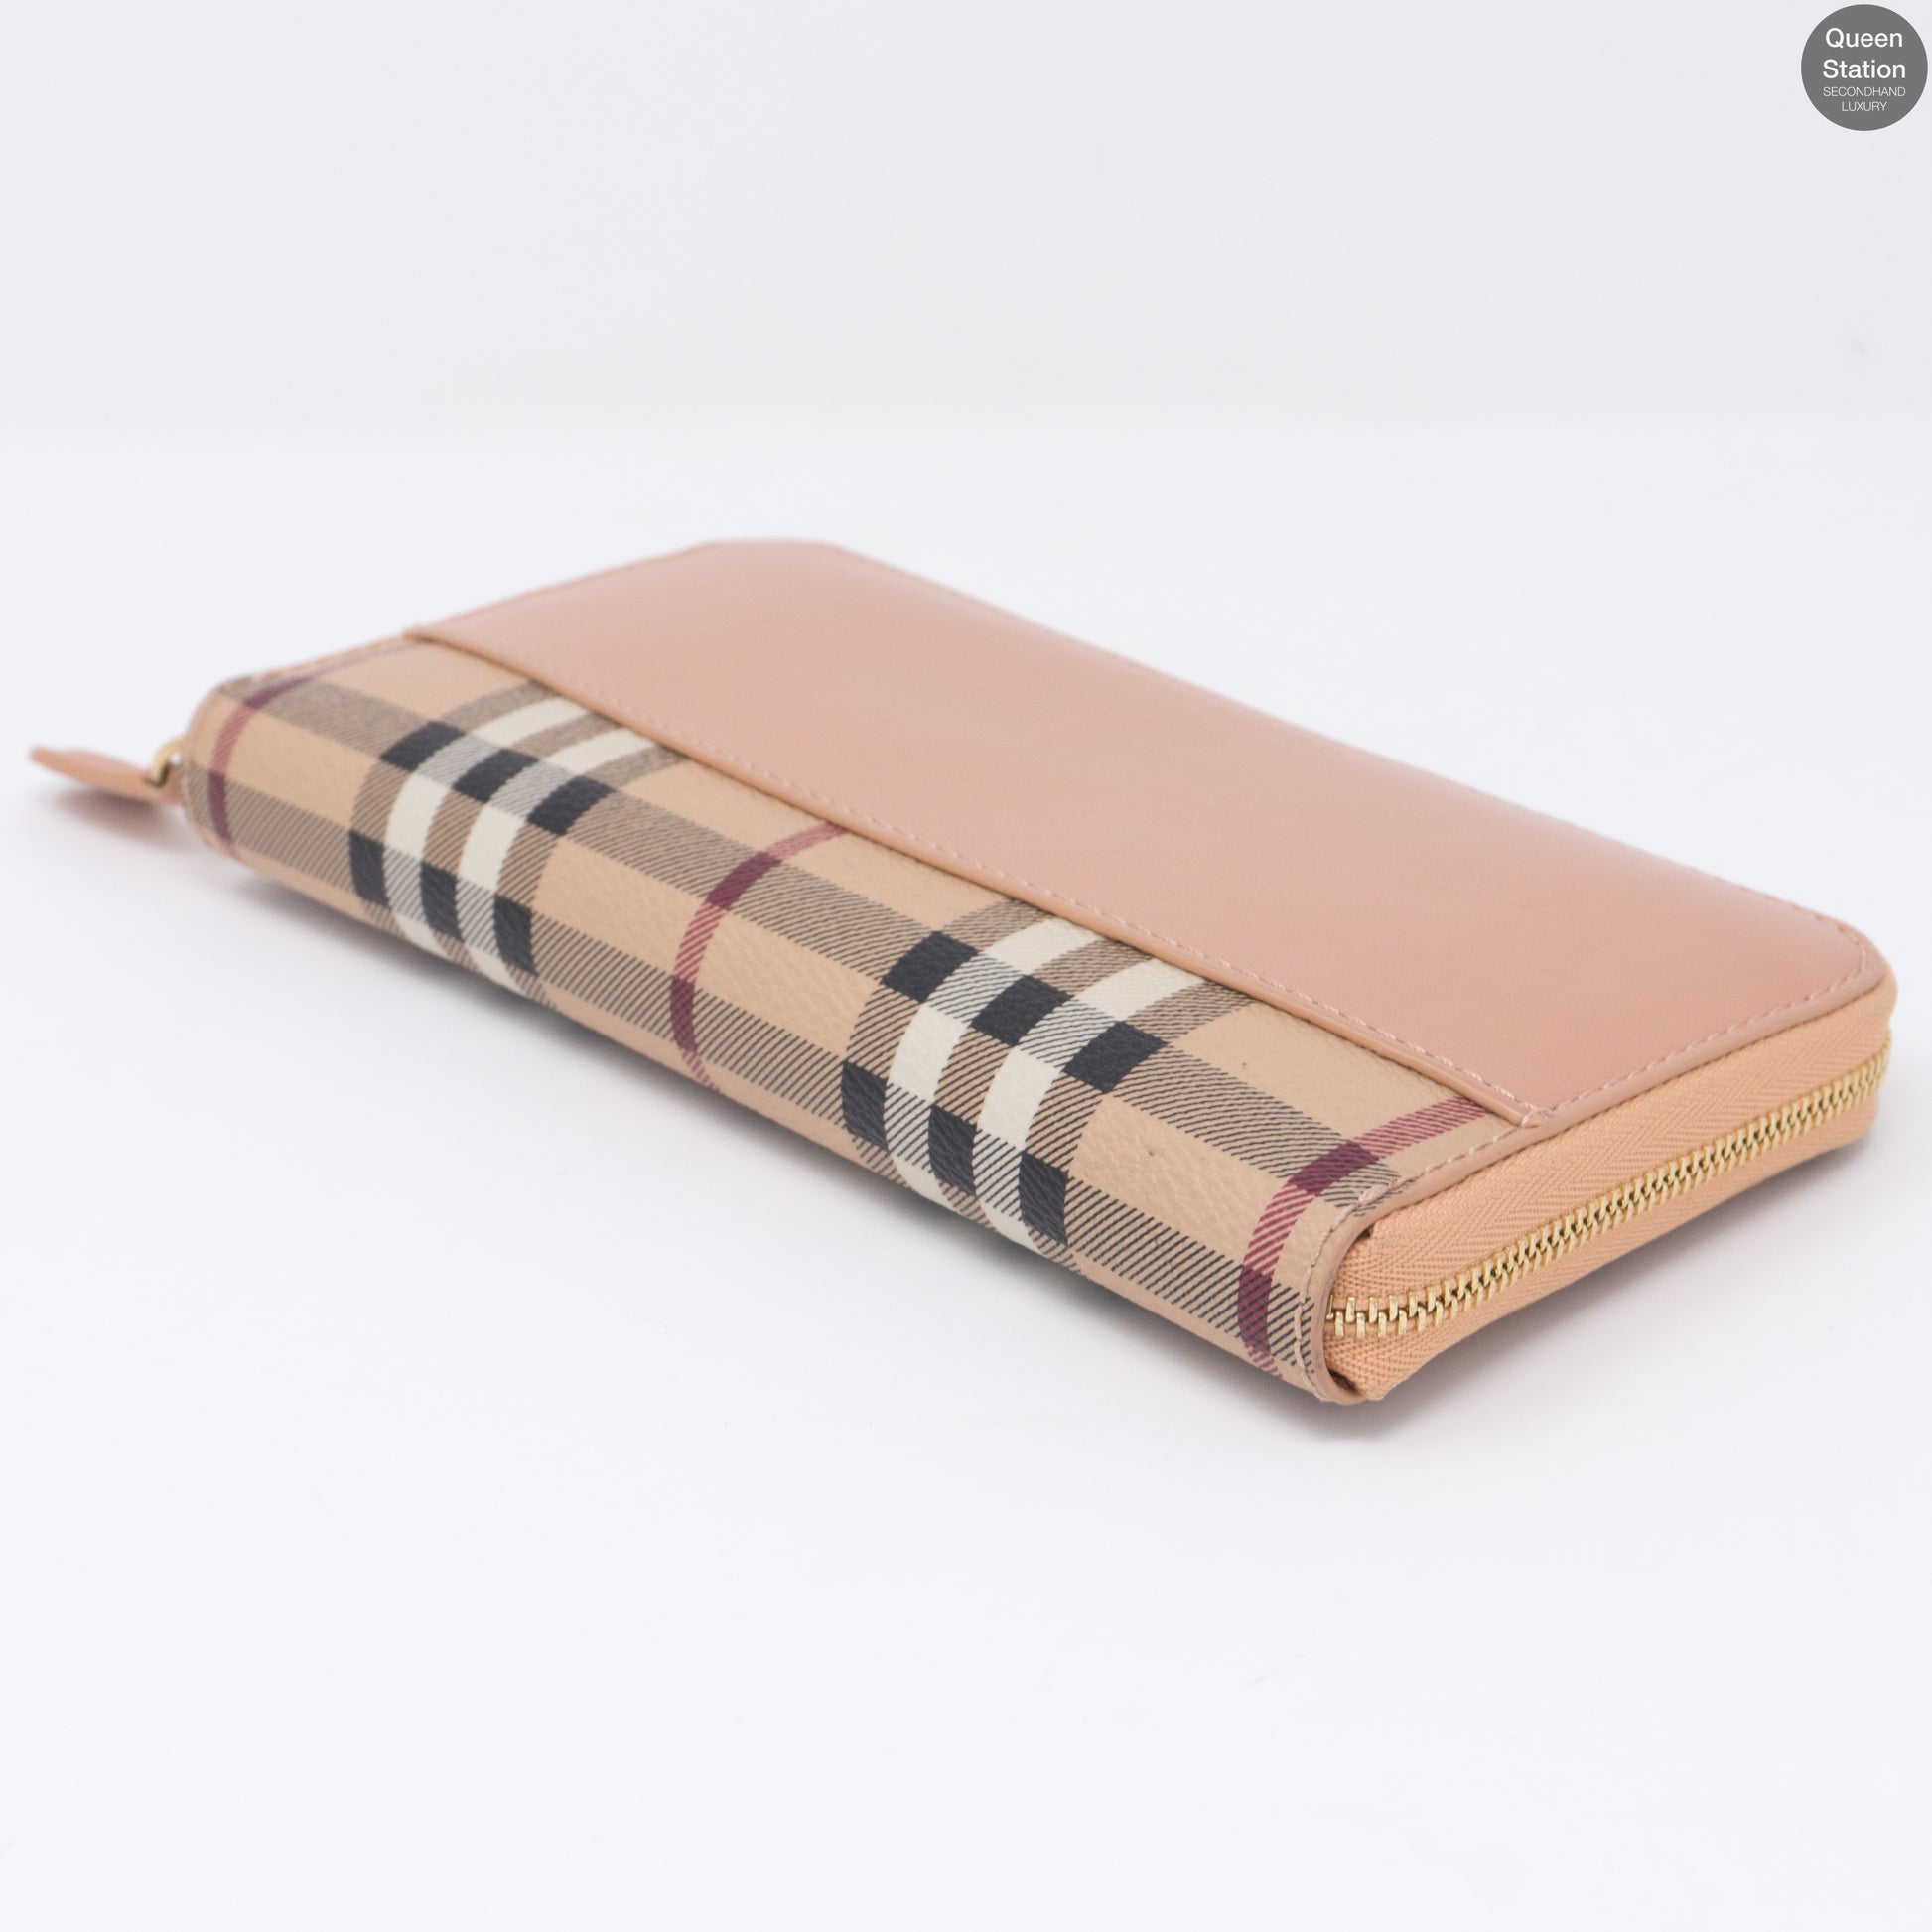 Burberry – Elmore Haymarket Coral Pink Leather Zip Wallet – Queen Station